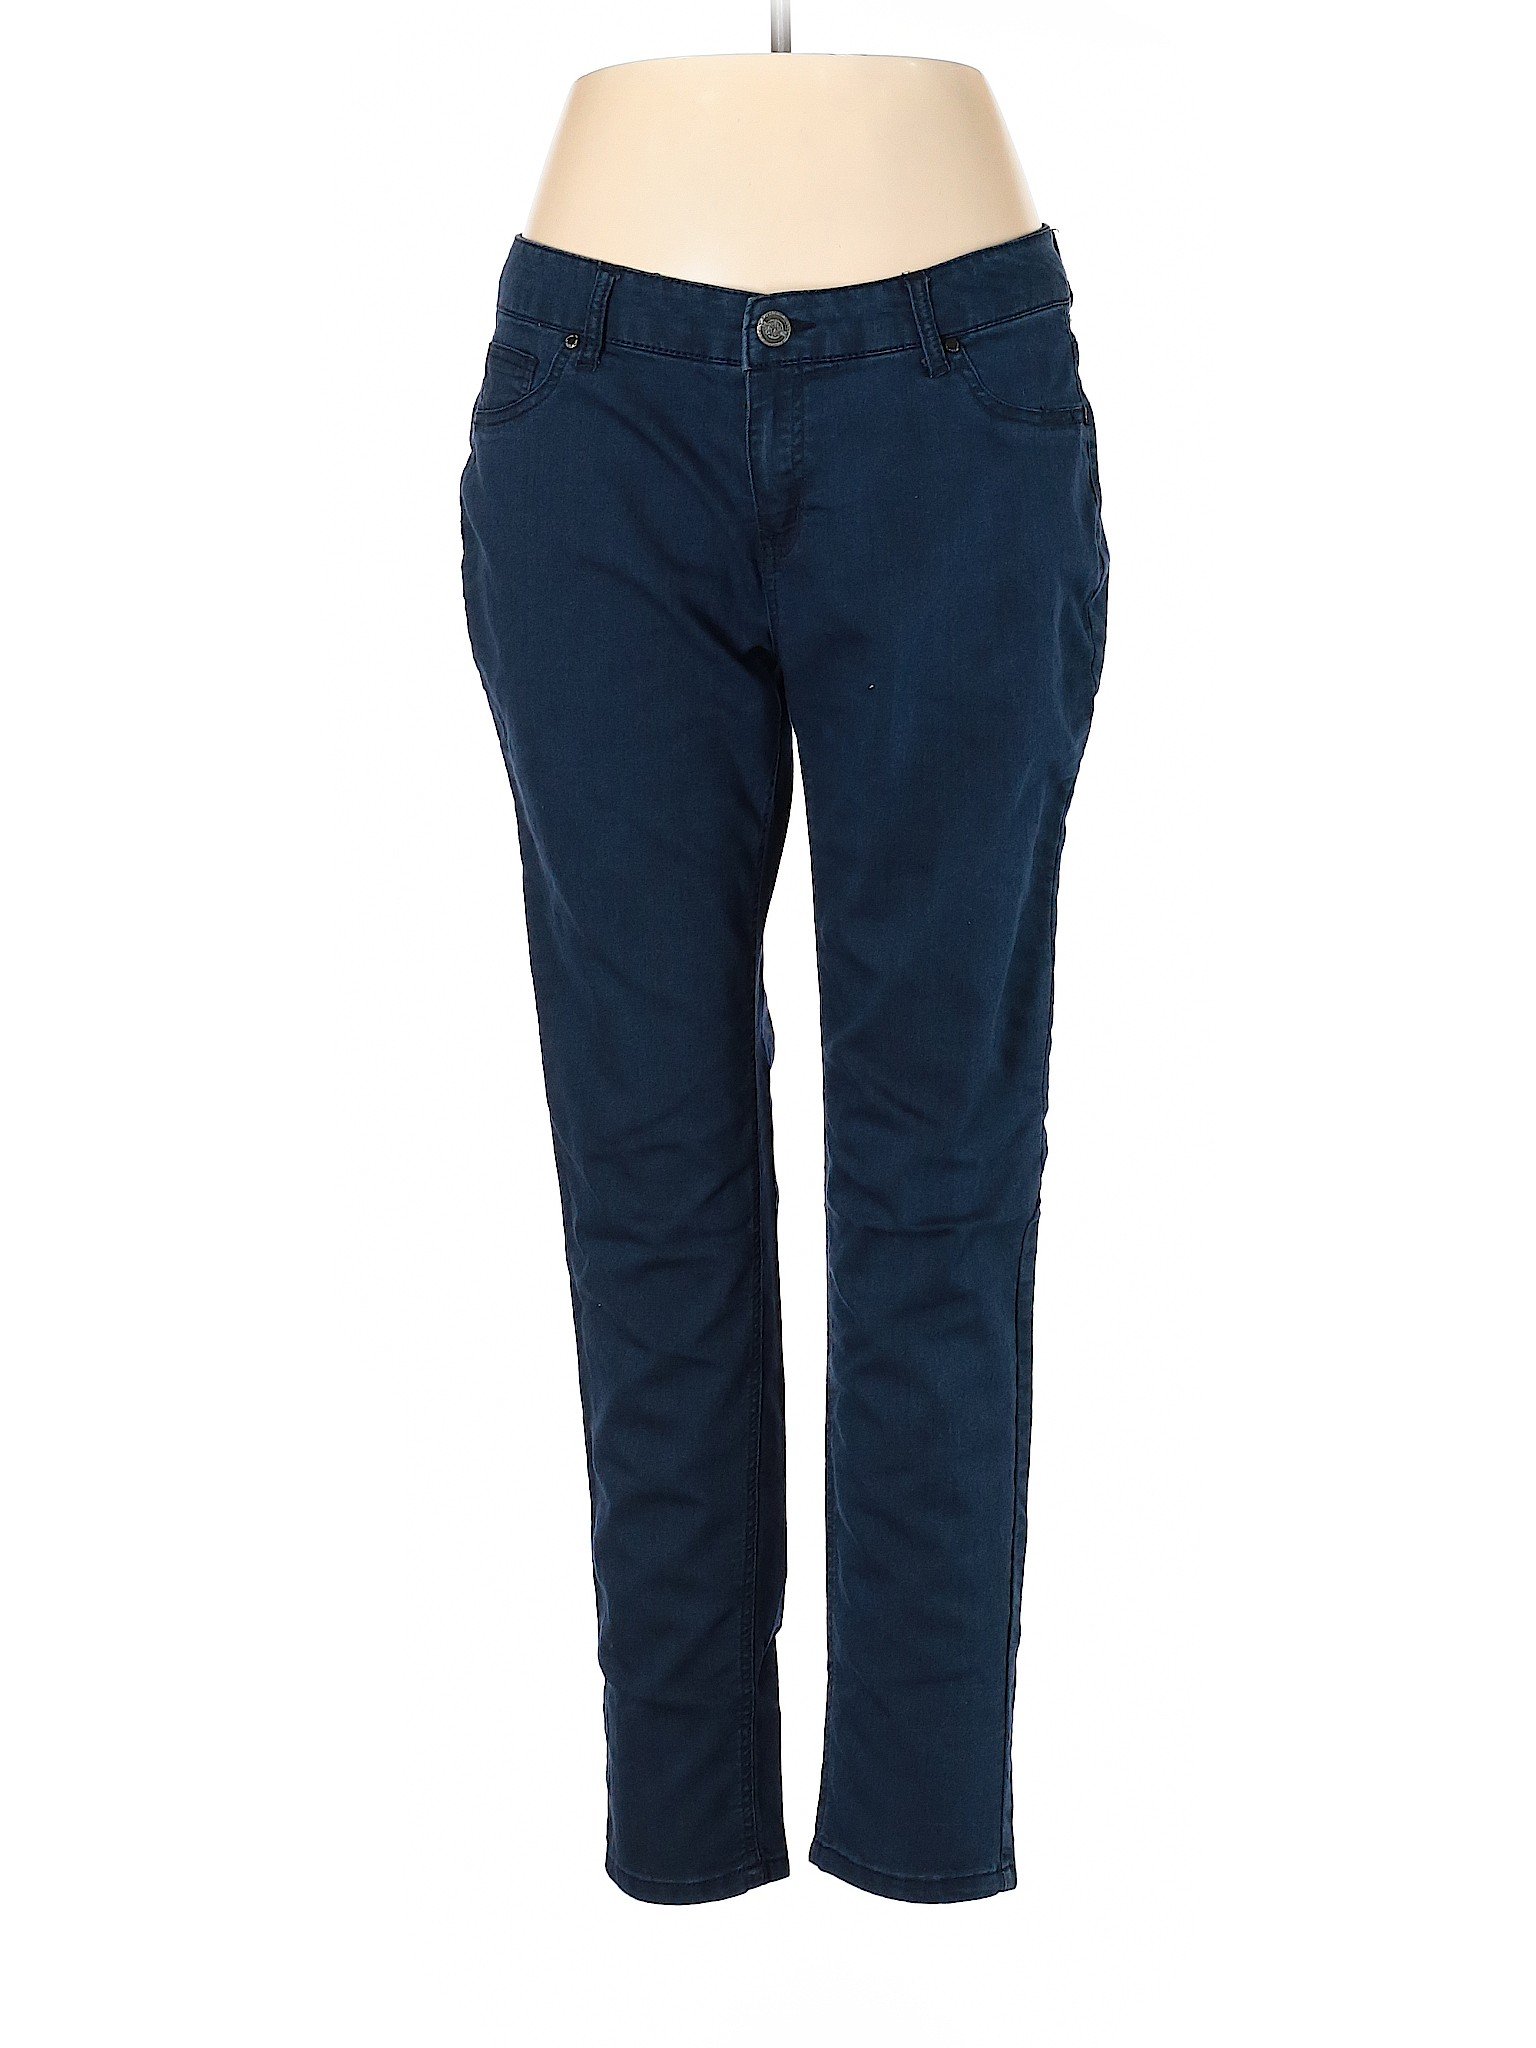 Boom Boom Jeans Women Blue Jeggings 14 | eBay